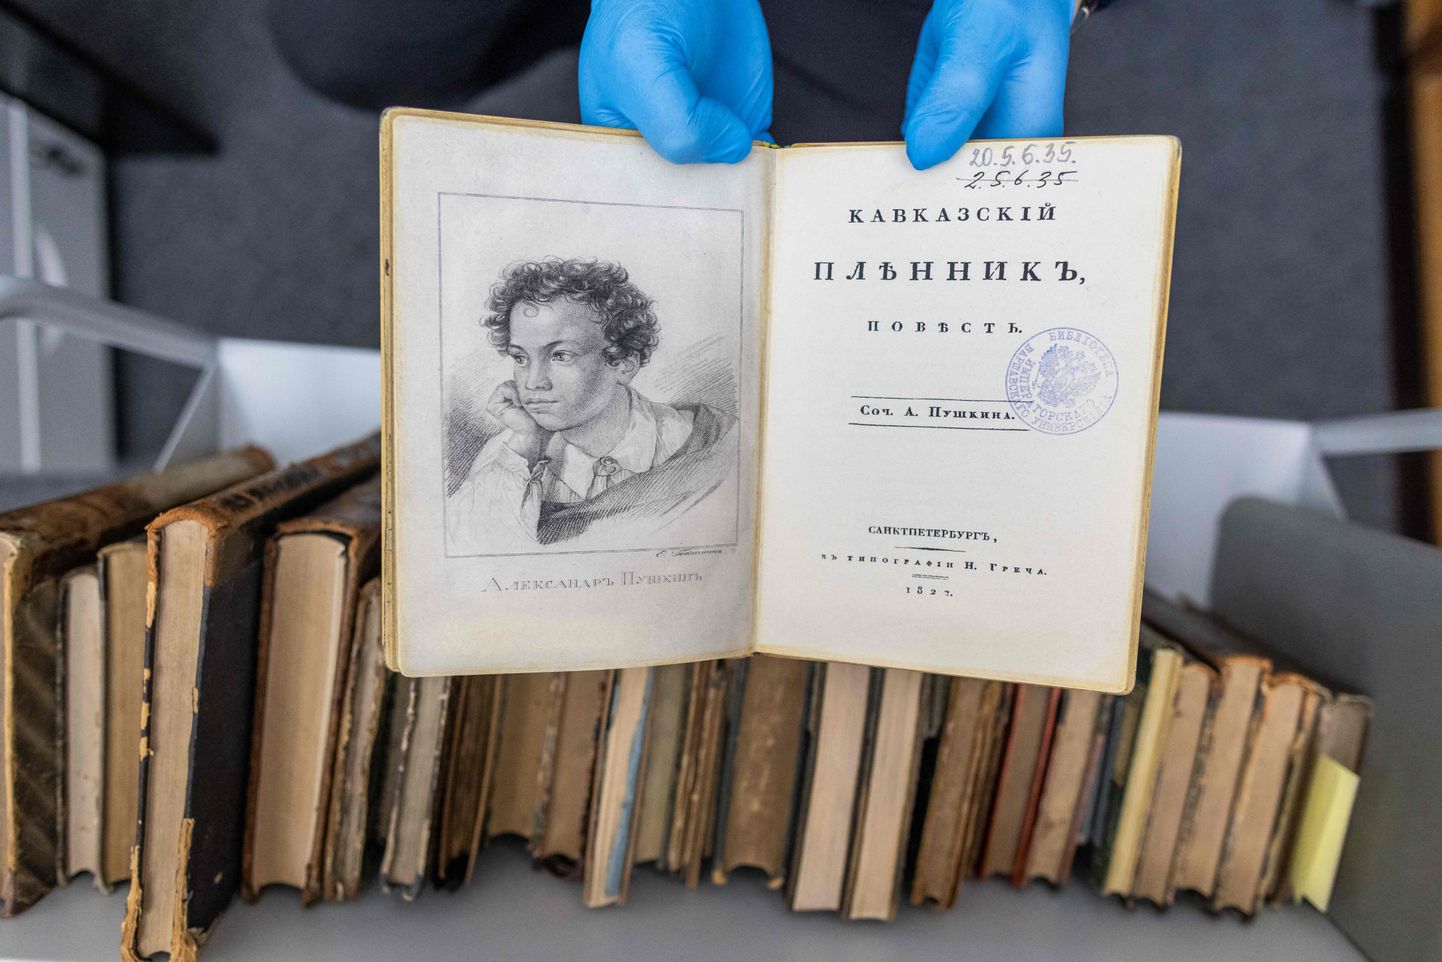 Aleksander Puškini 1822. aasta raamatu «Kaukaasia vang» esimese väljaande võltsitud eksemplar Varssavi ülikooli raamatukogus.